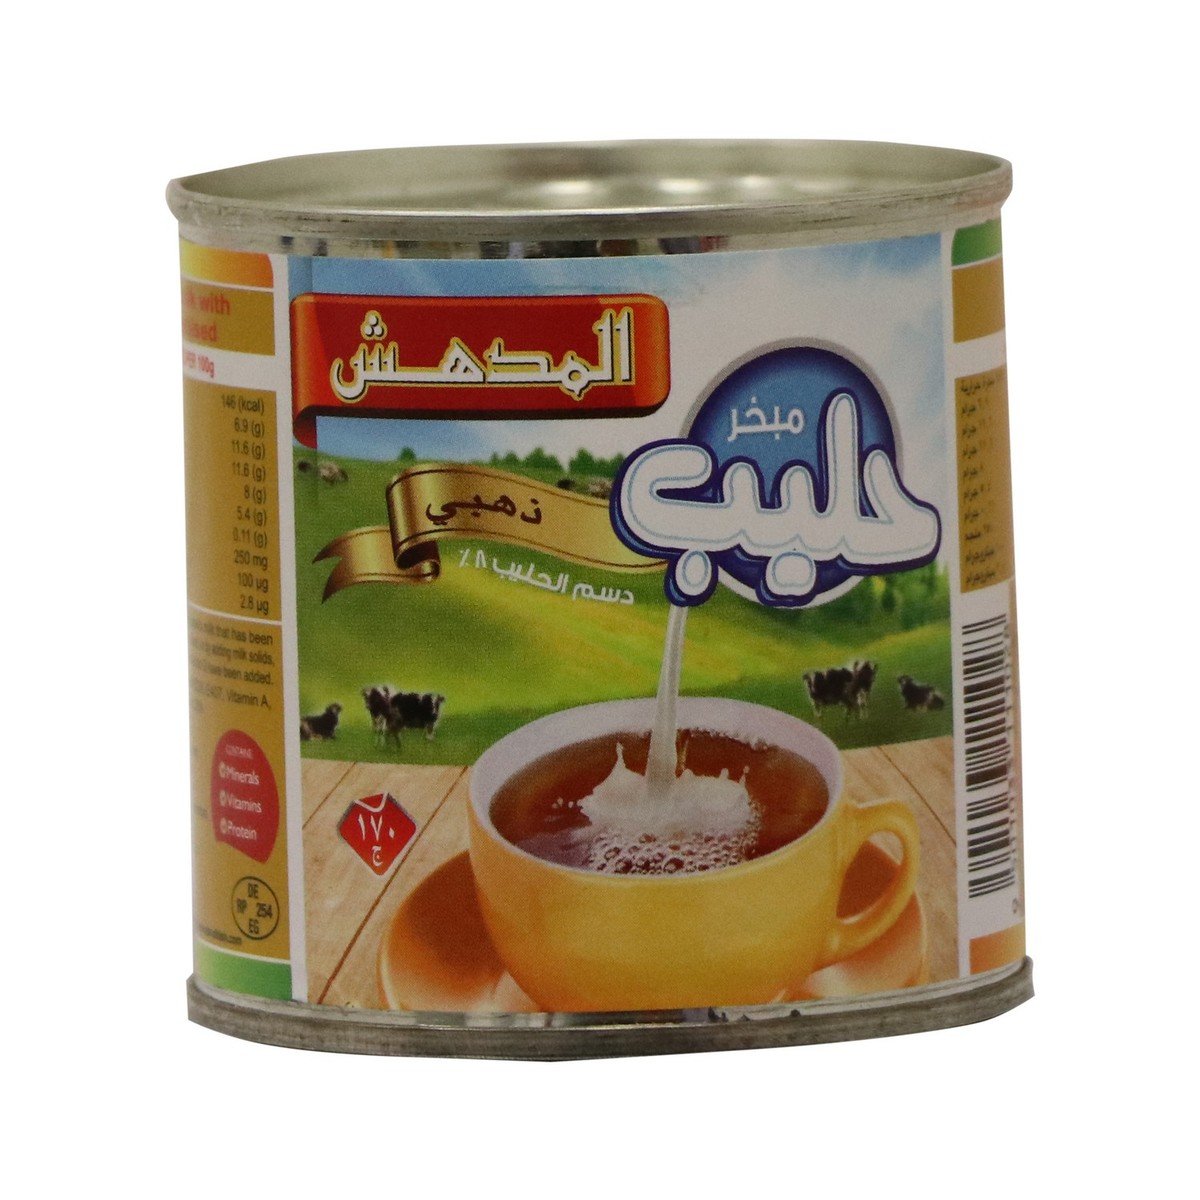 Al Mudhish Gold Evaporated Milk 48 x 170 g